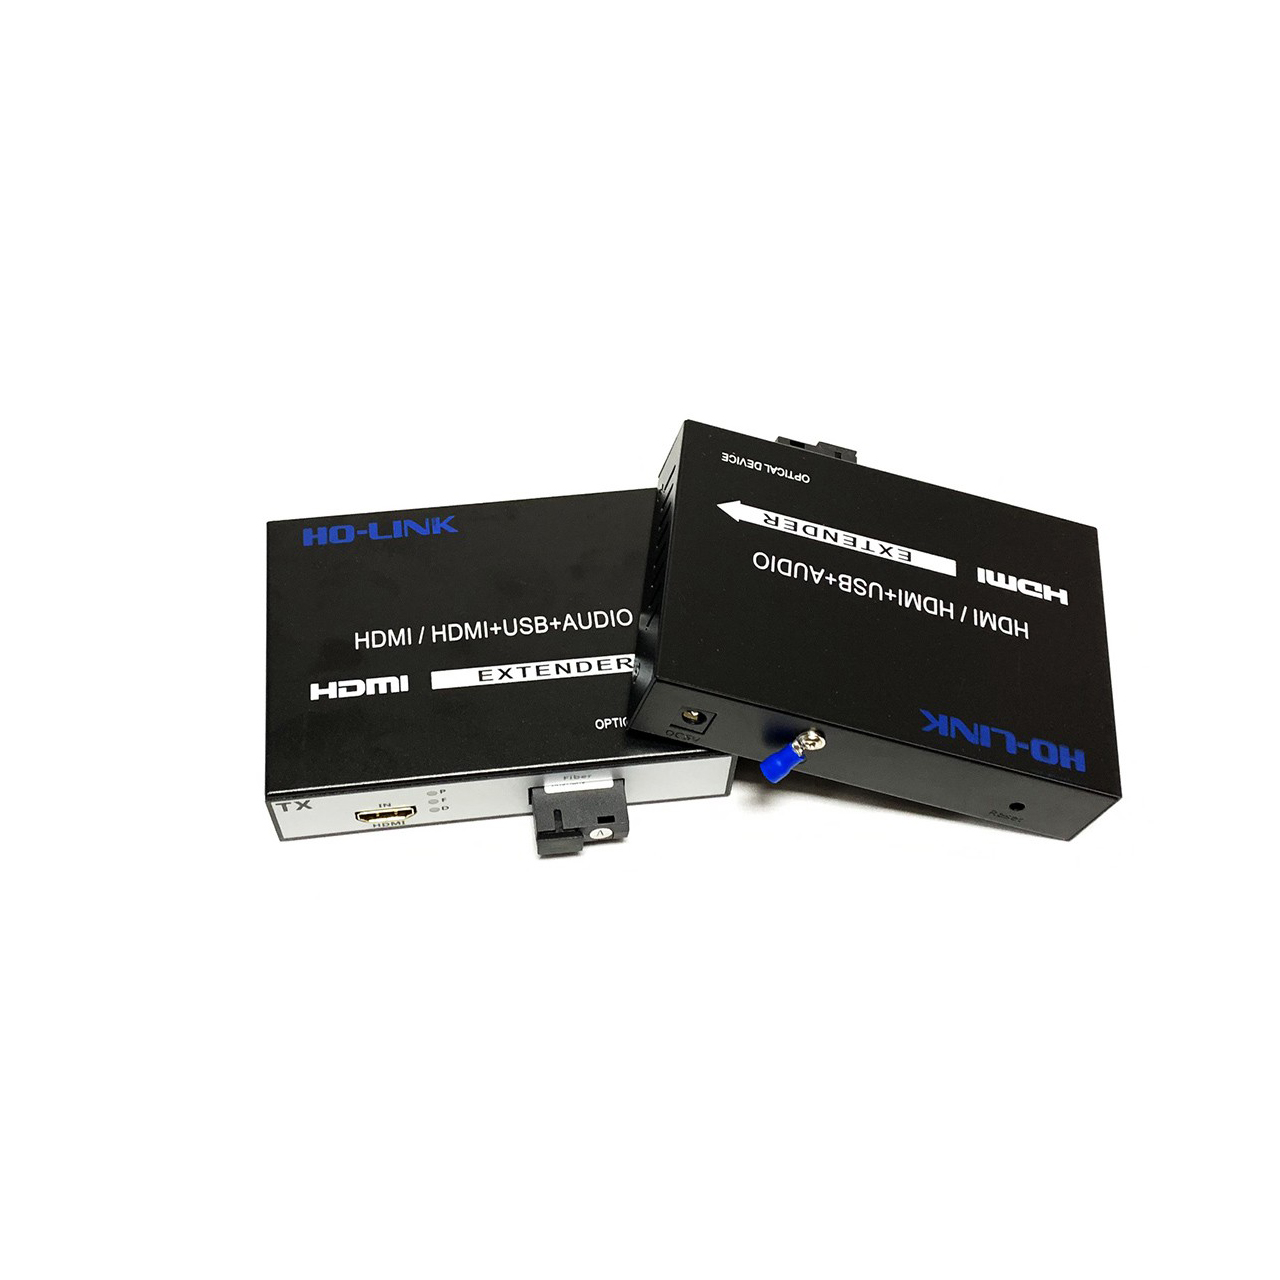 Bộ chuyển đổi hdmi qua cáp quang Ho-link HL-HDMI-1SC-20T/R - Hàng Chính Hãng